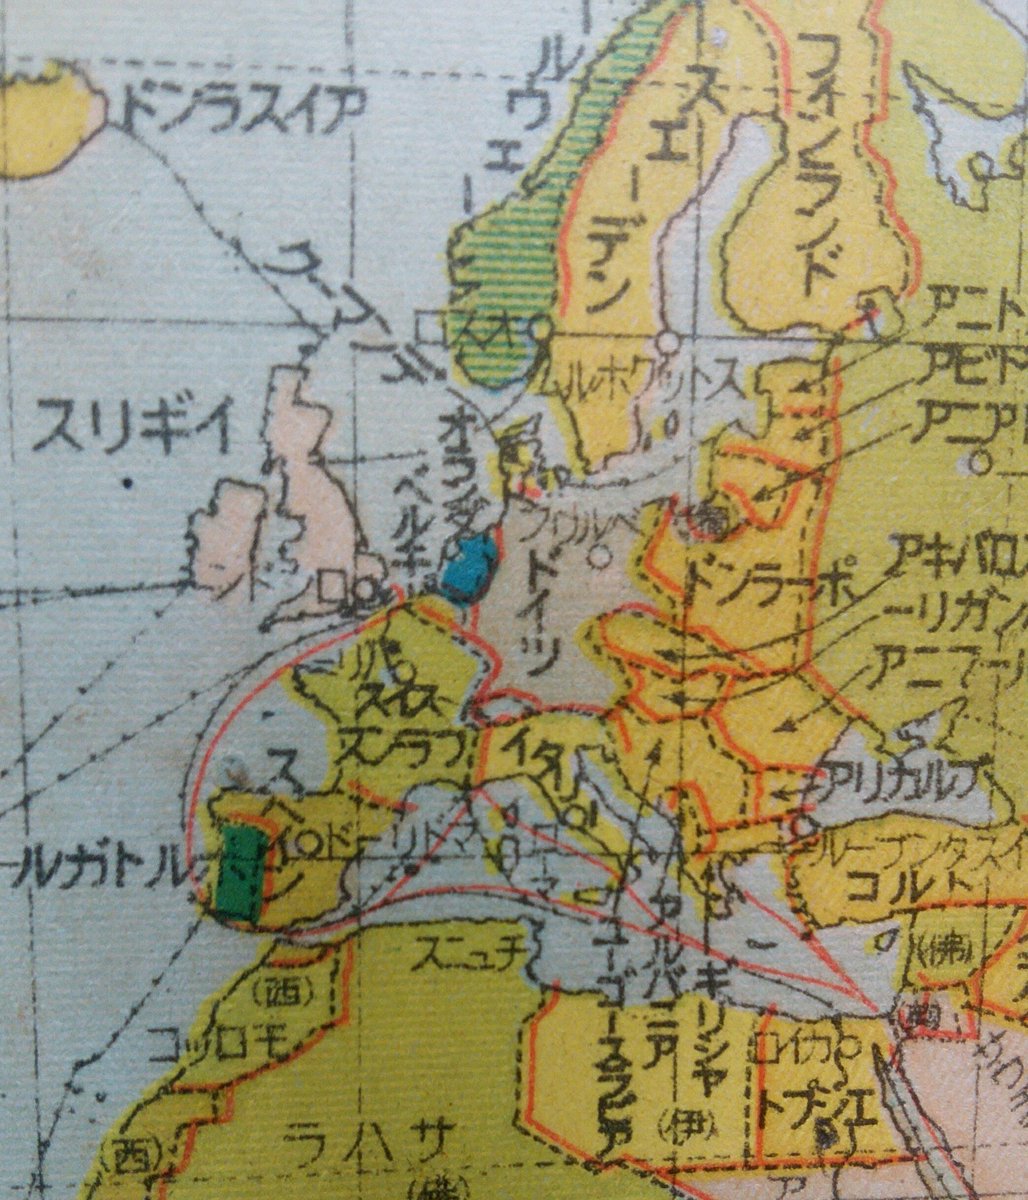 りーべ 昭和14年の世界地図 アフリカの独立国がエジプトだけというとんでもない時代です ドイツは1938 昭和13 年にオーストリアを併合し 翌年9月にポーランドを制圧していますが これはちょうどその間 昭和14年4月発行 の地図です